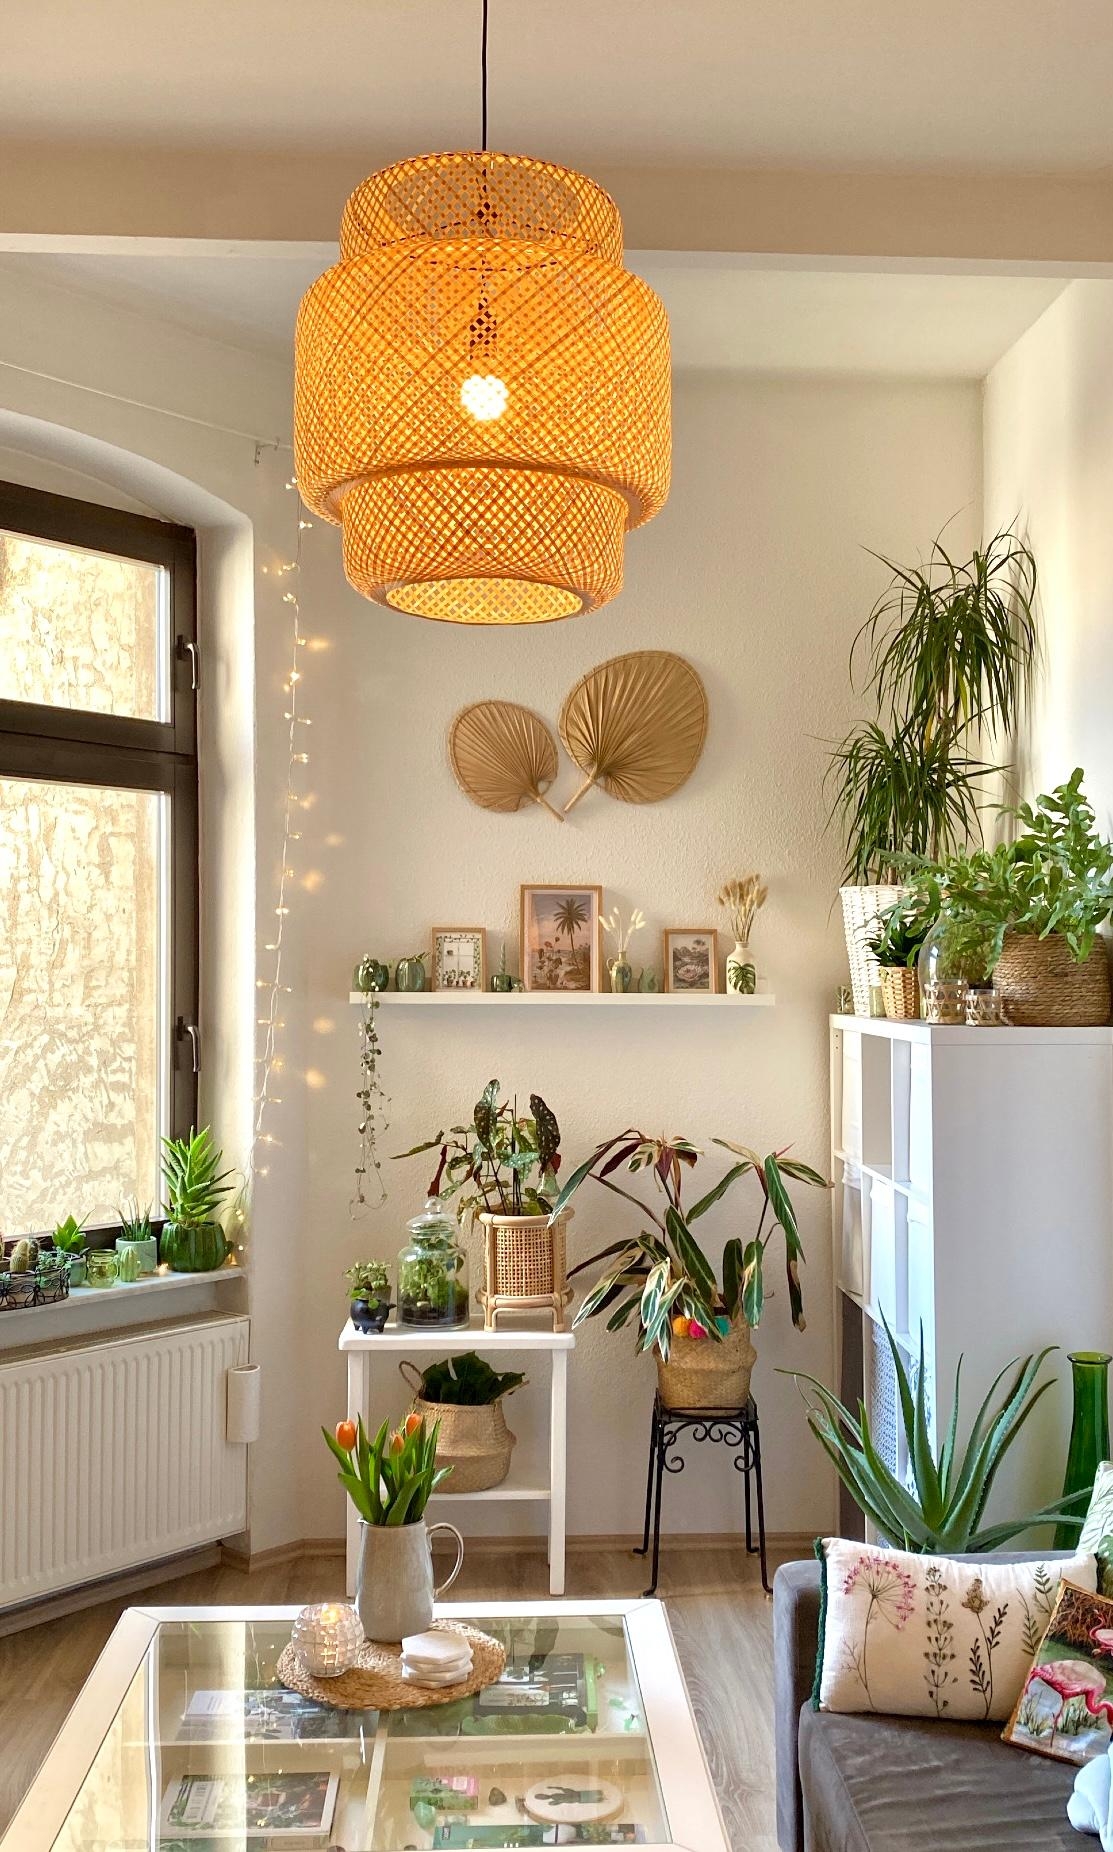 Ich liebe diese Lampe! 
#einrichtung #rattan #lampe #deko #pflanzenliebe #urbanjungle #plants #home #wohnzimmer 